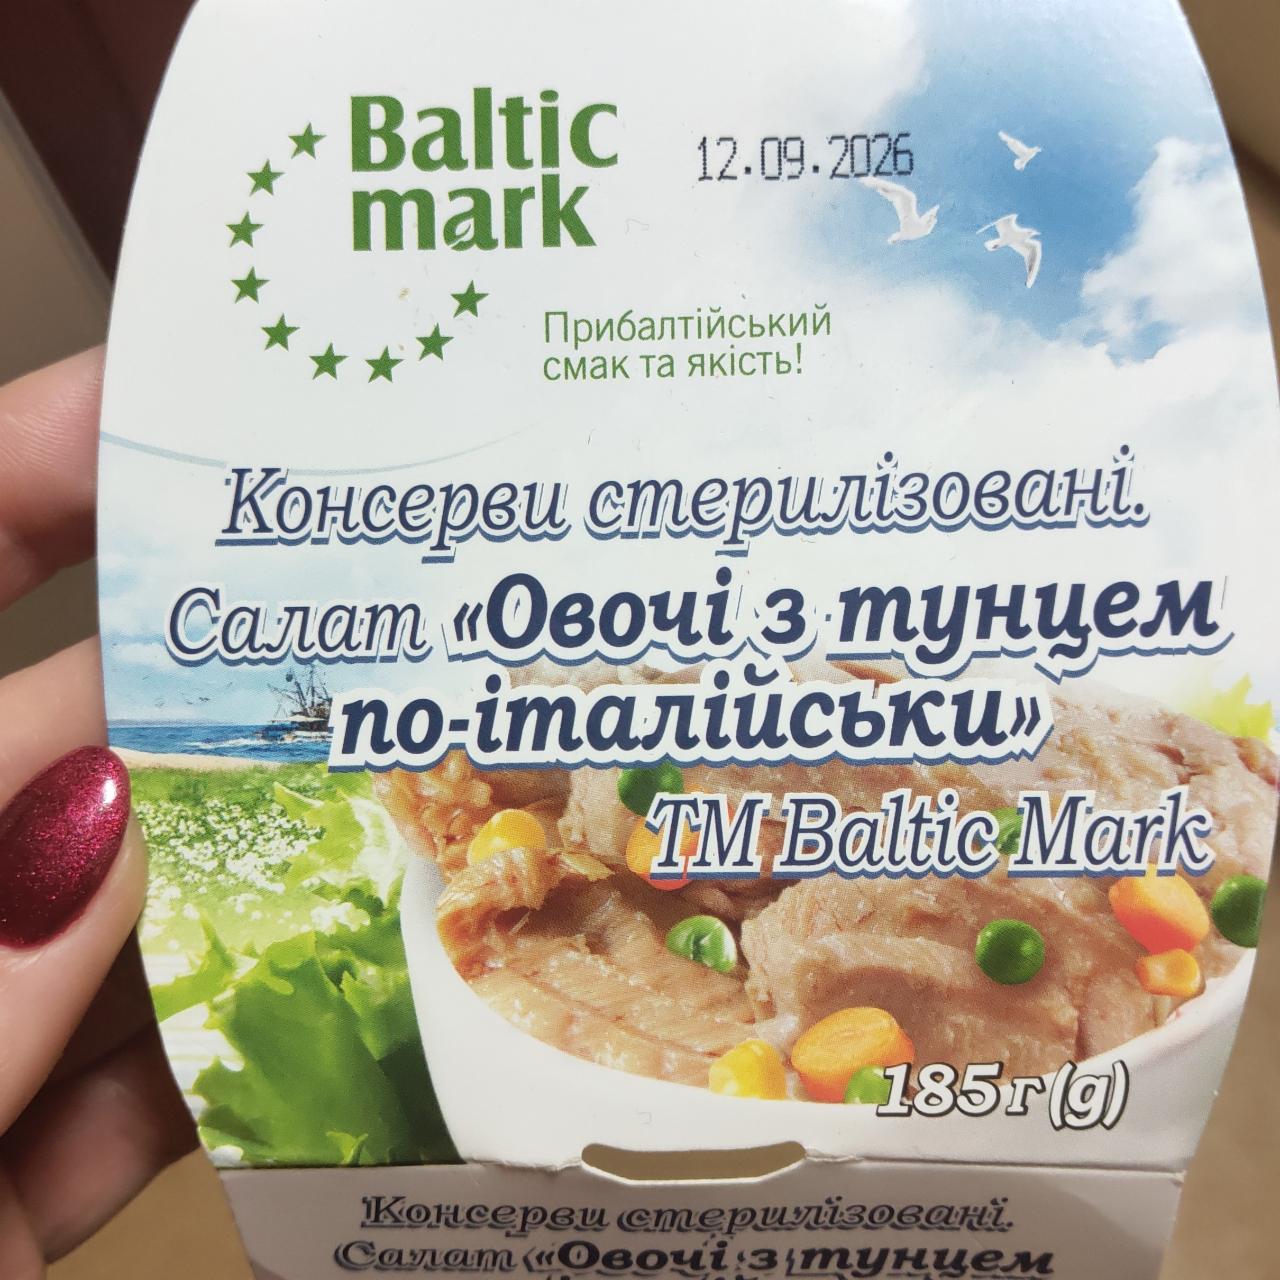 Фото - Консерва тунец с овощами Baltic mark